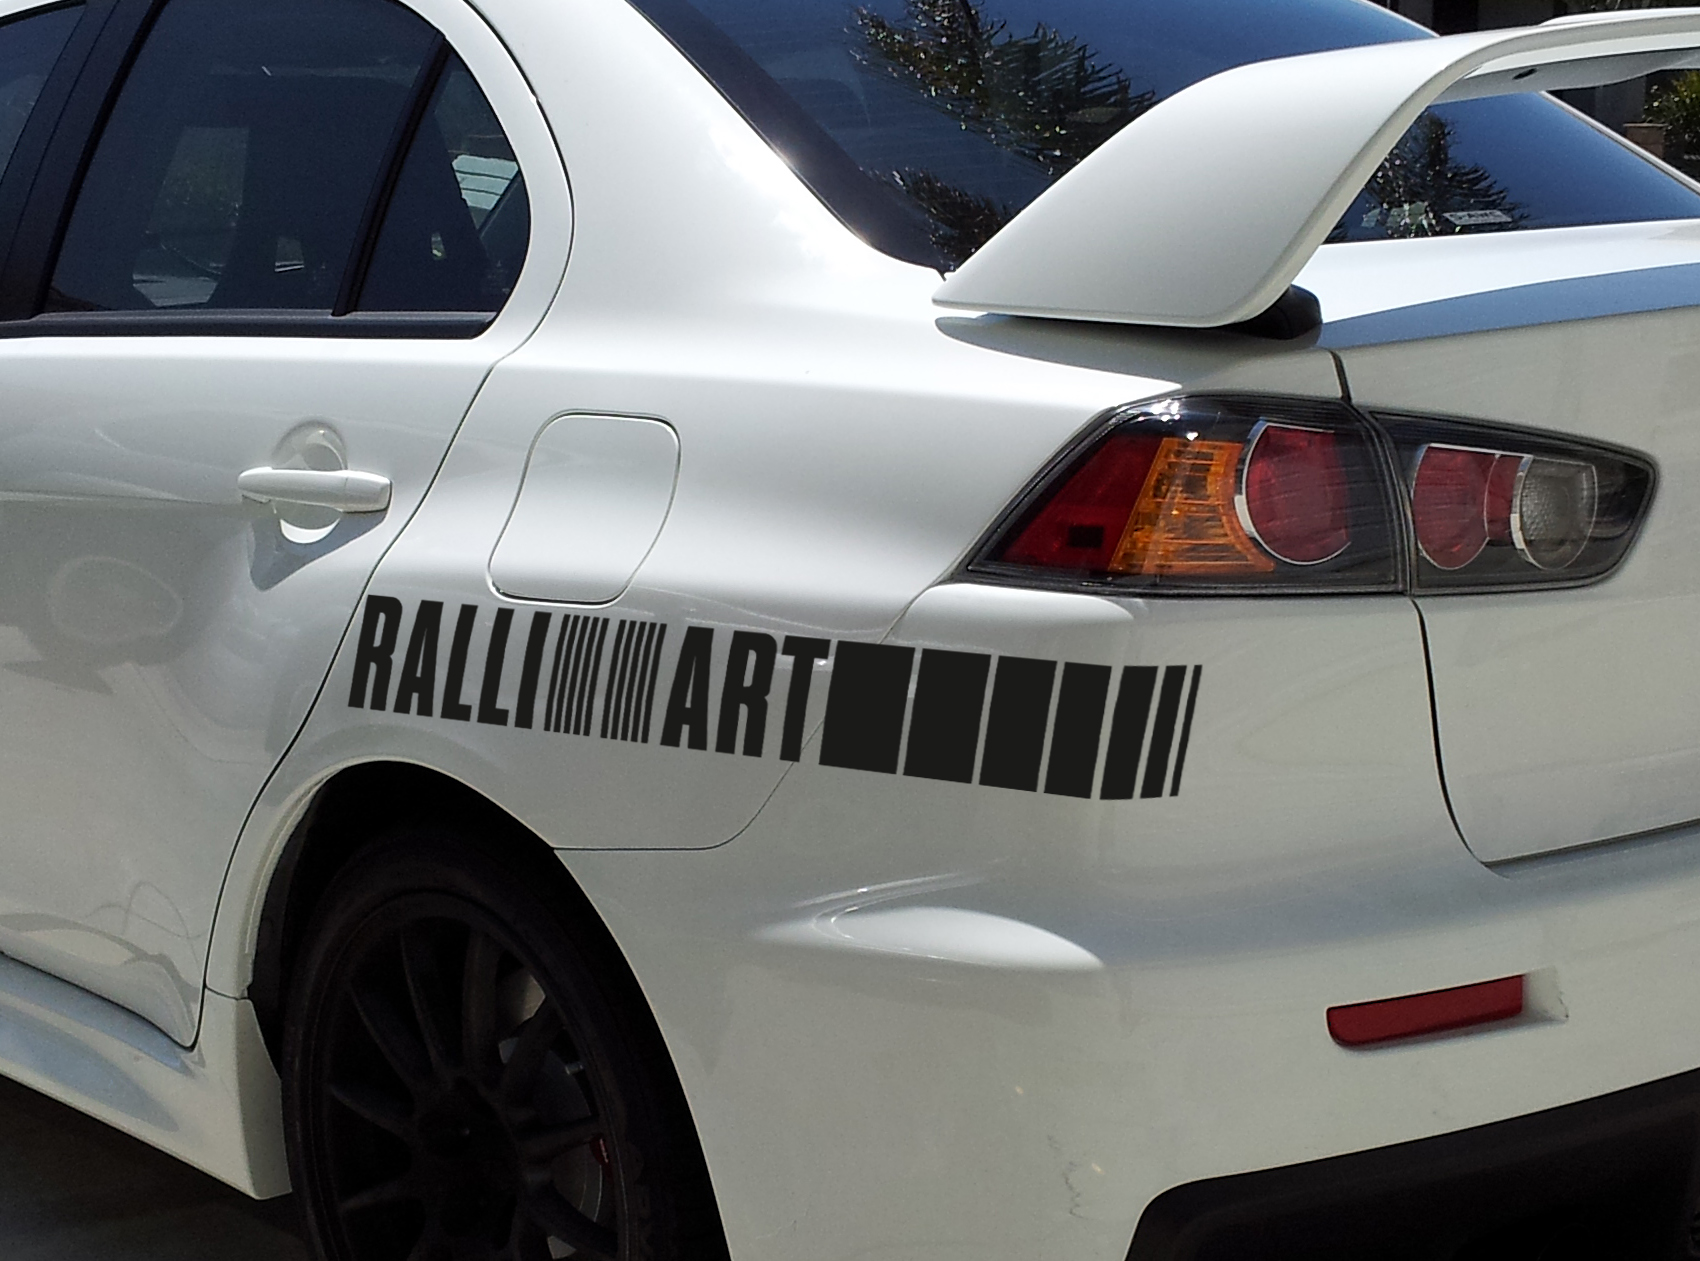 2x Ralli Art Rally Racing Sports 4x4 Decal di adesivo in vinile automobilistico si adatta a Mitsubishi Evo Lancer